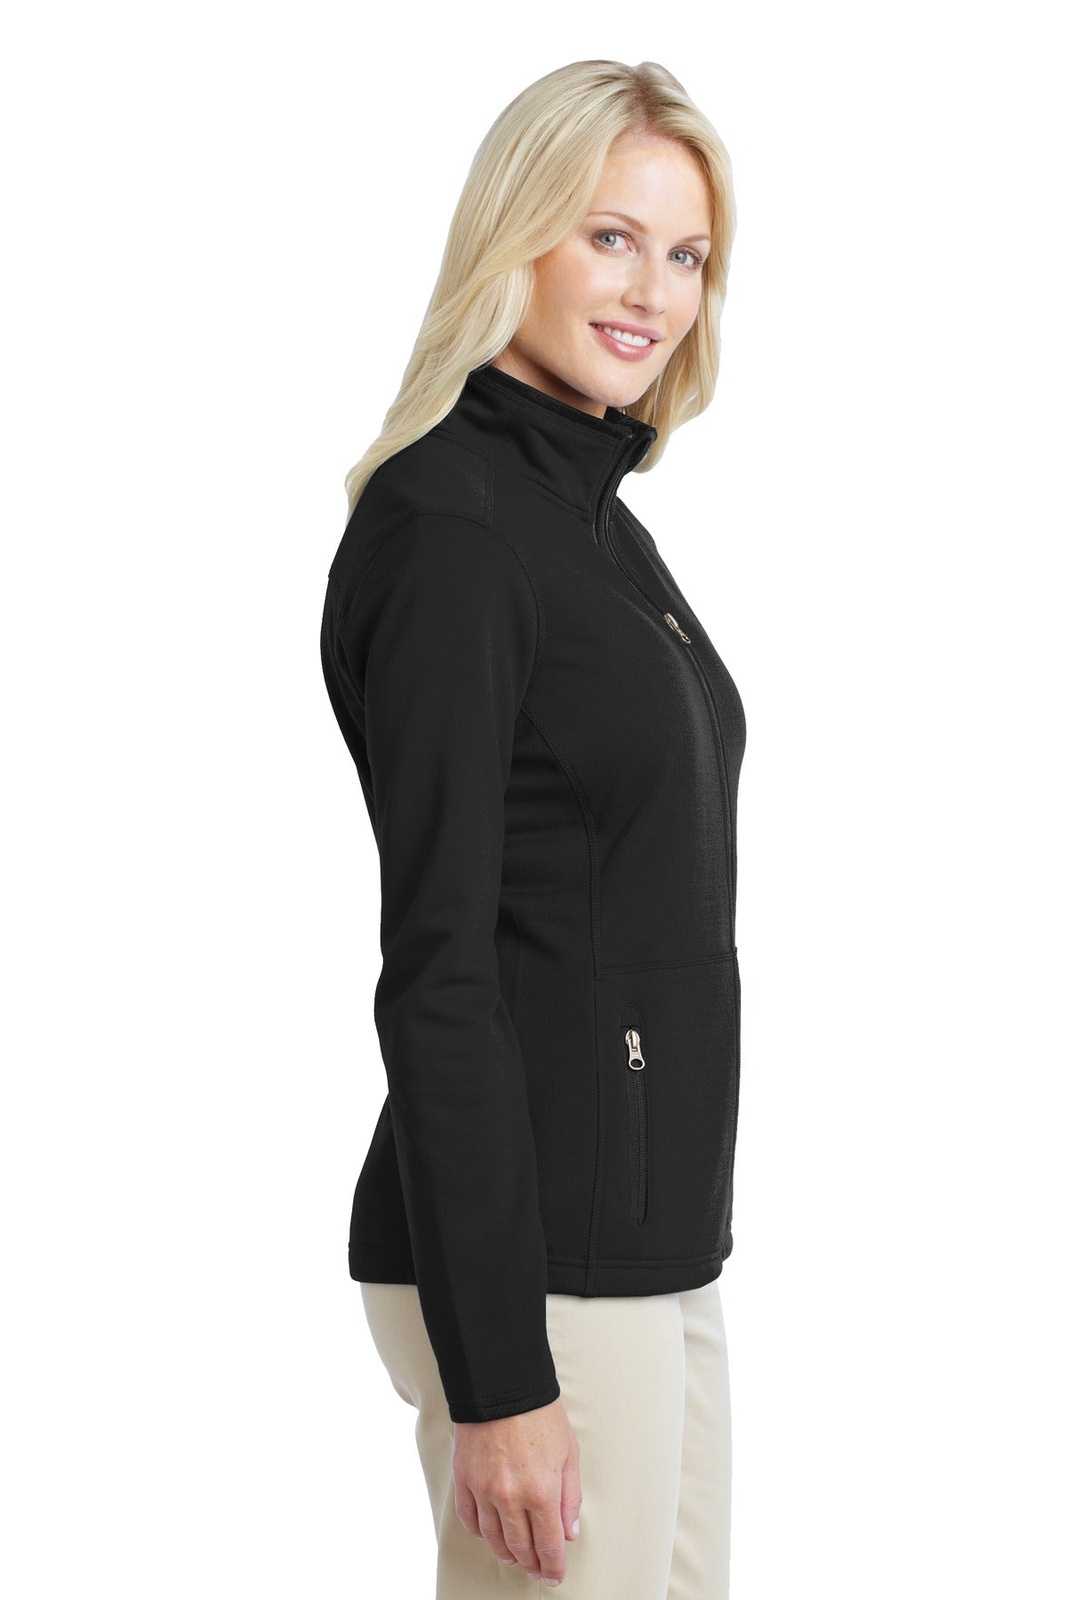 Port Authority L222 Ladies Pique Fleece Jacket - Black - HIT a Double - 3